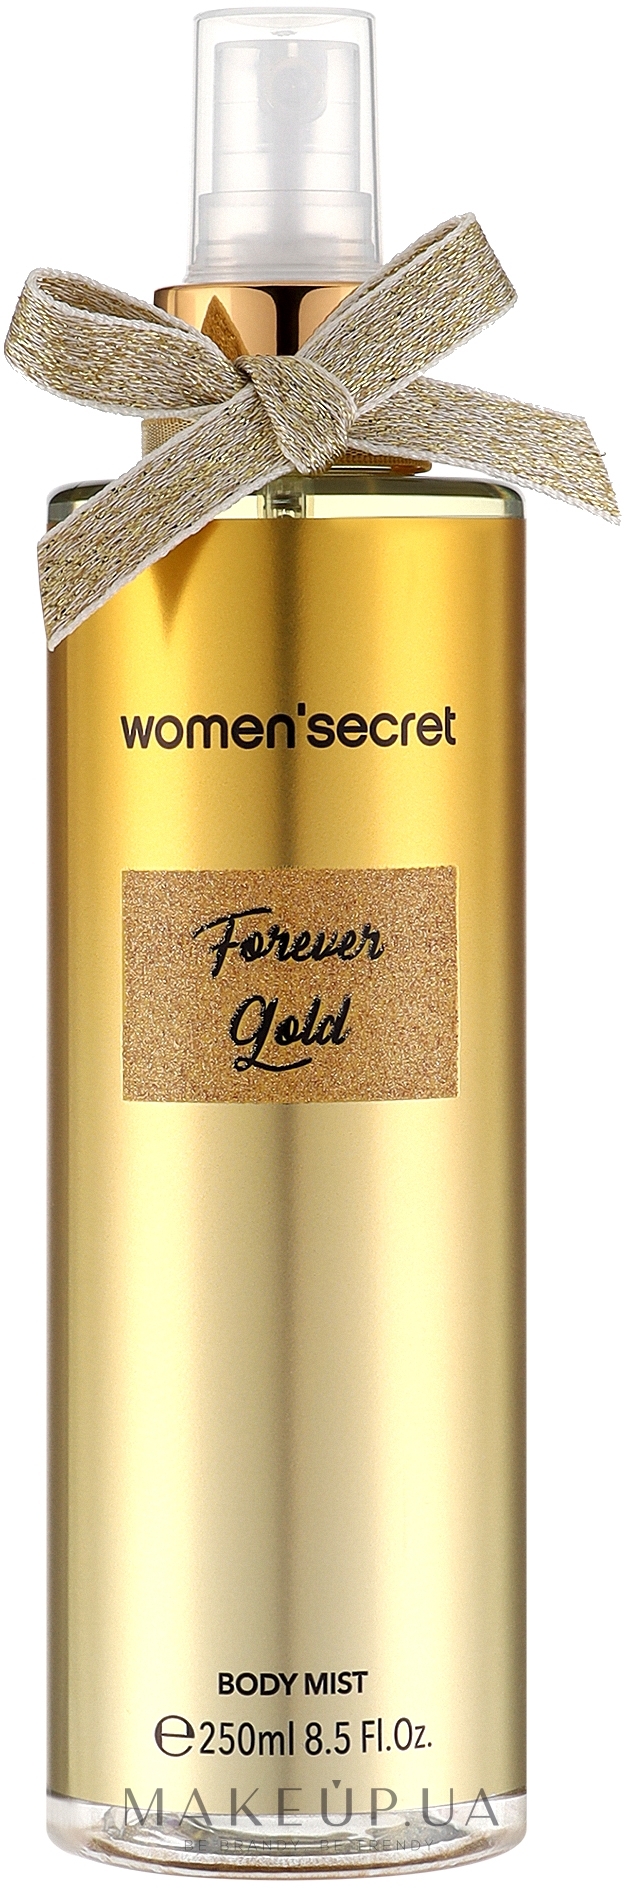 Women Secret Forever Gold - Парфюмированный спрей для тела — фото 250ml